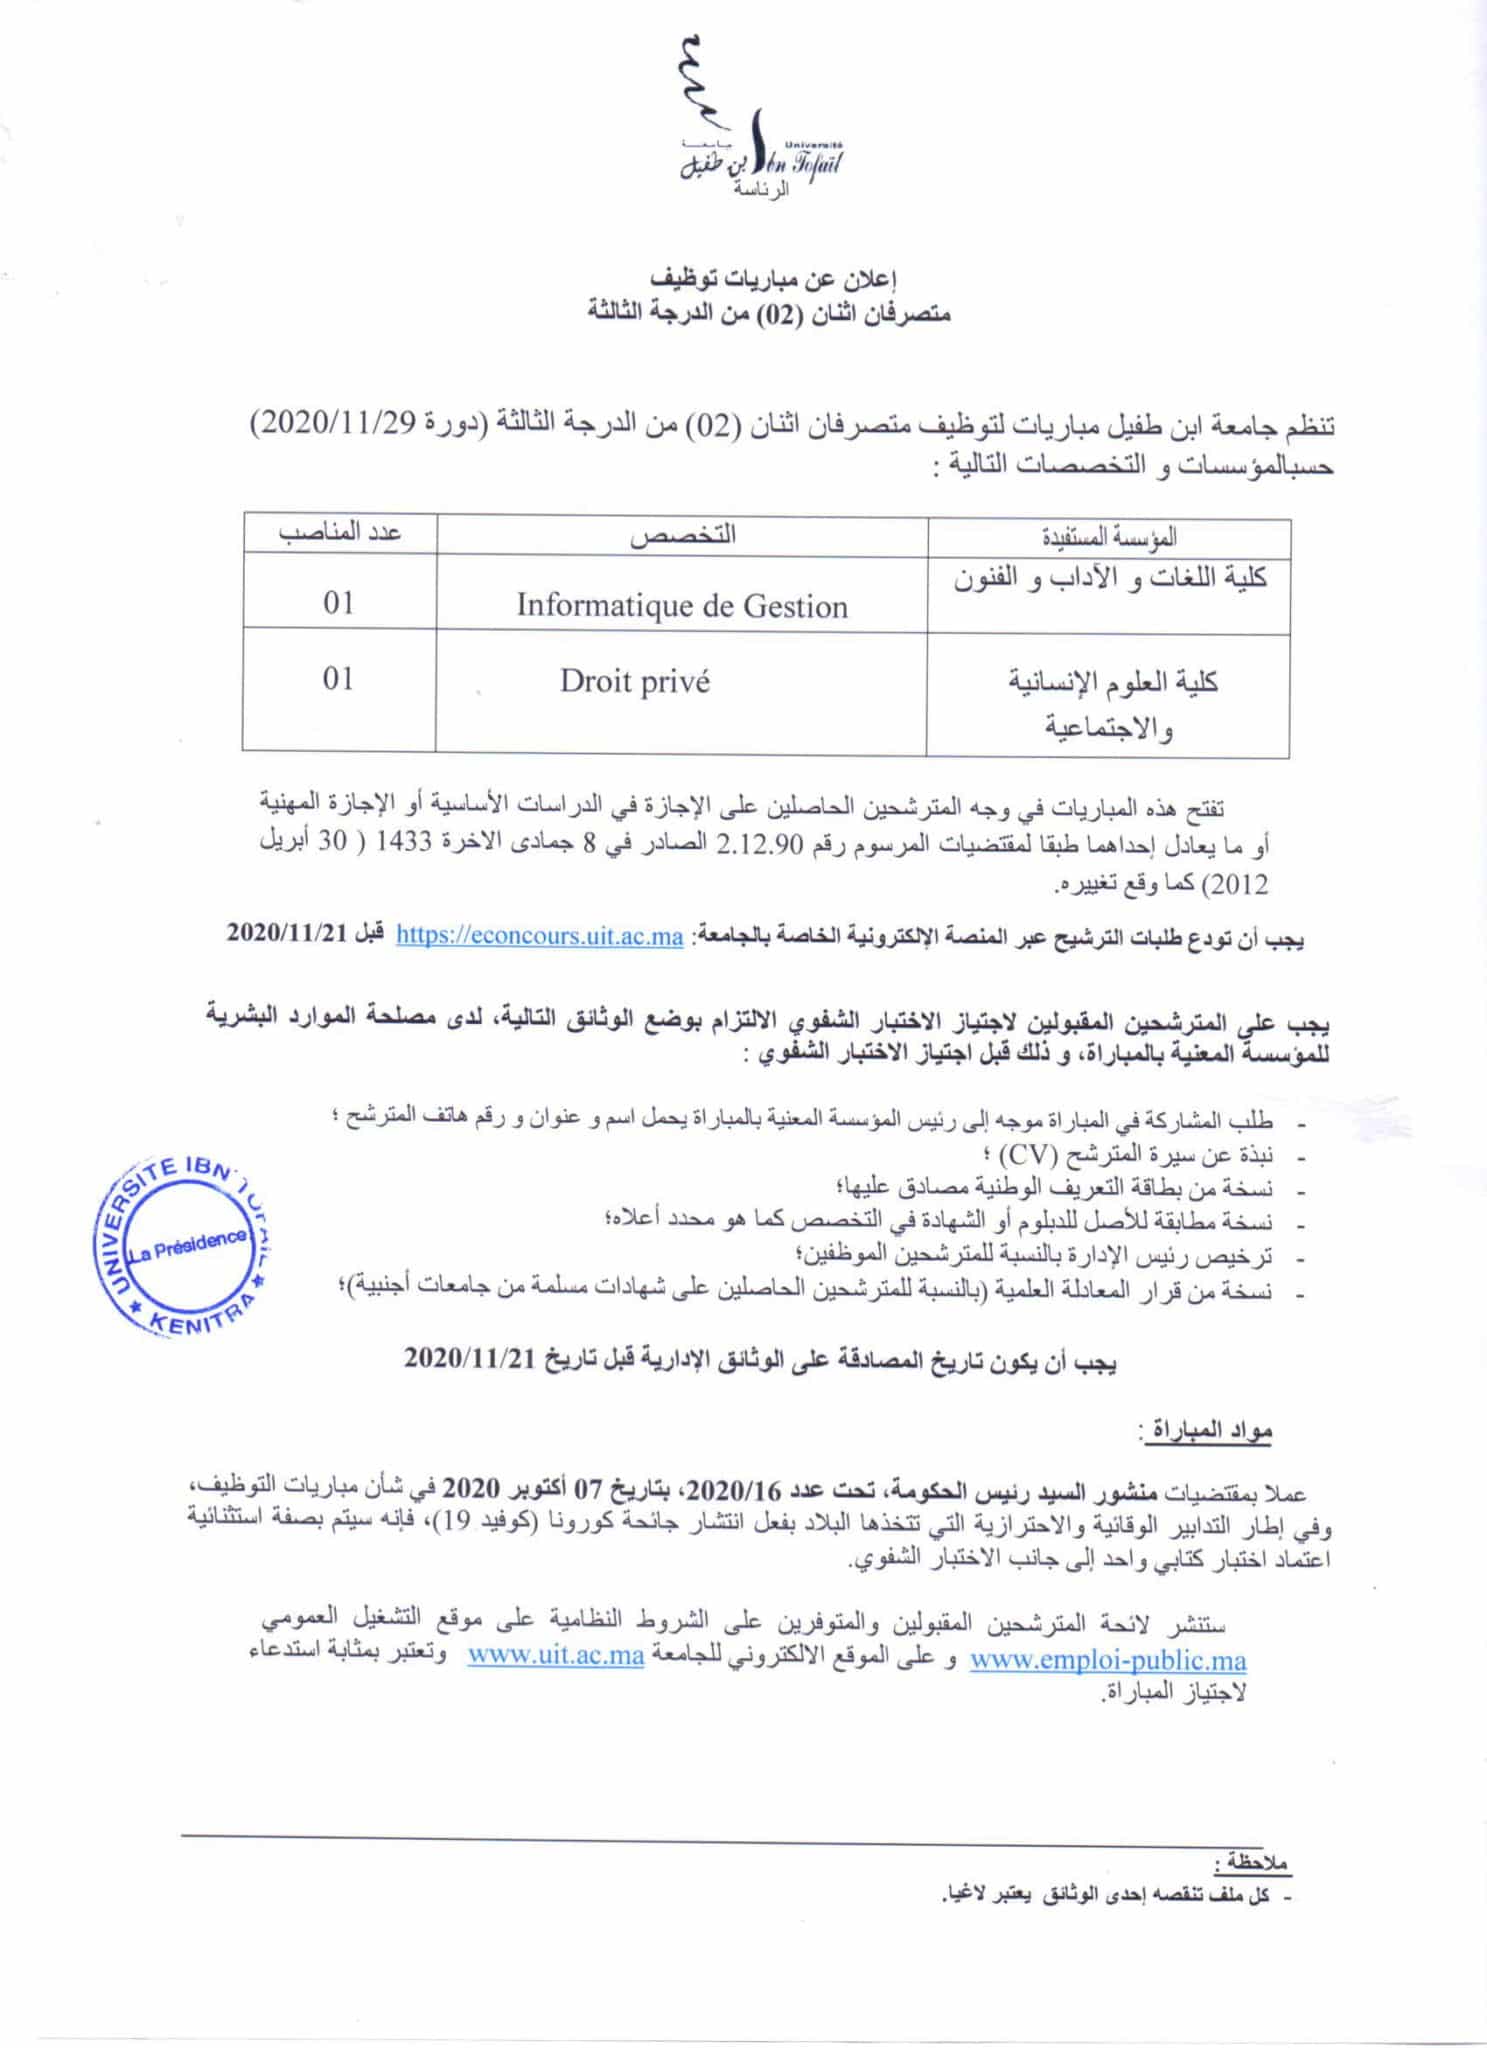 Concours Université Ibn Tofail (29 Postes)